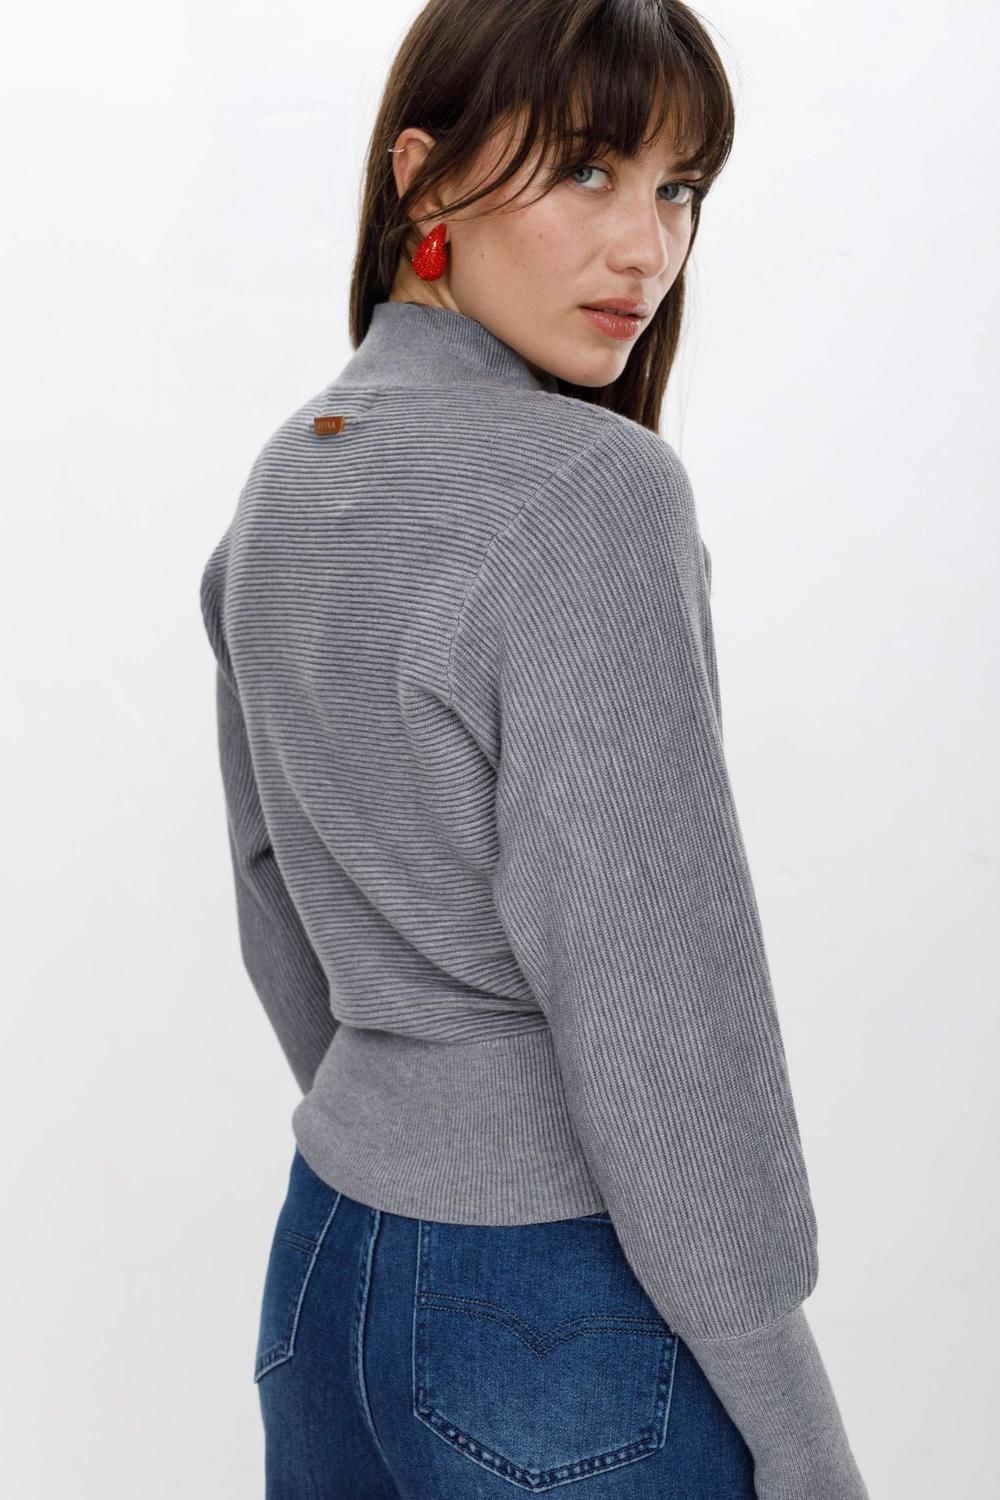 Sweater Polera Petunia